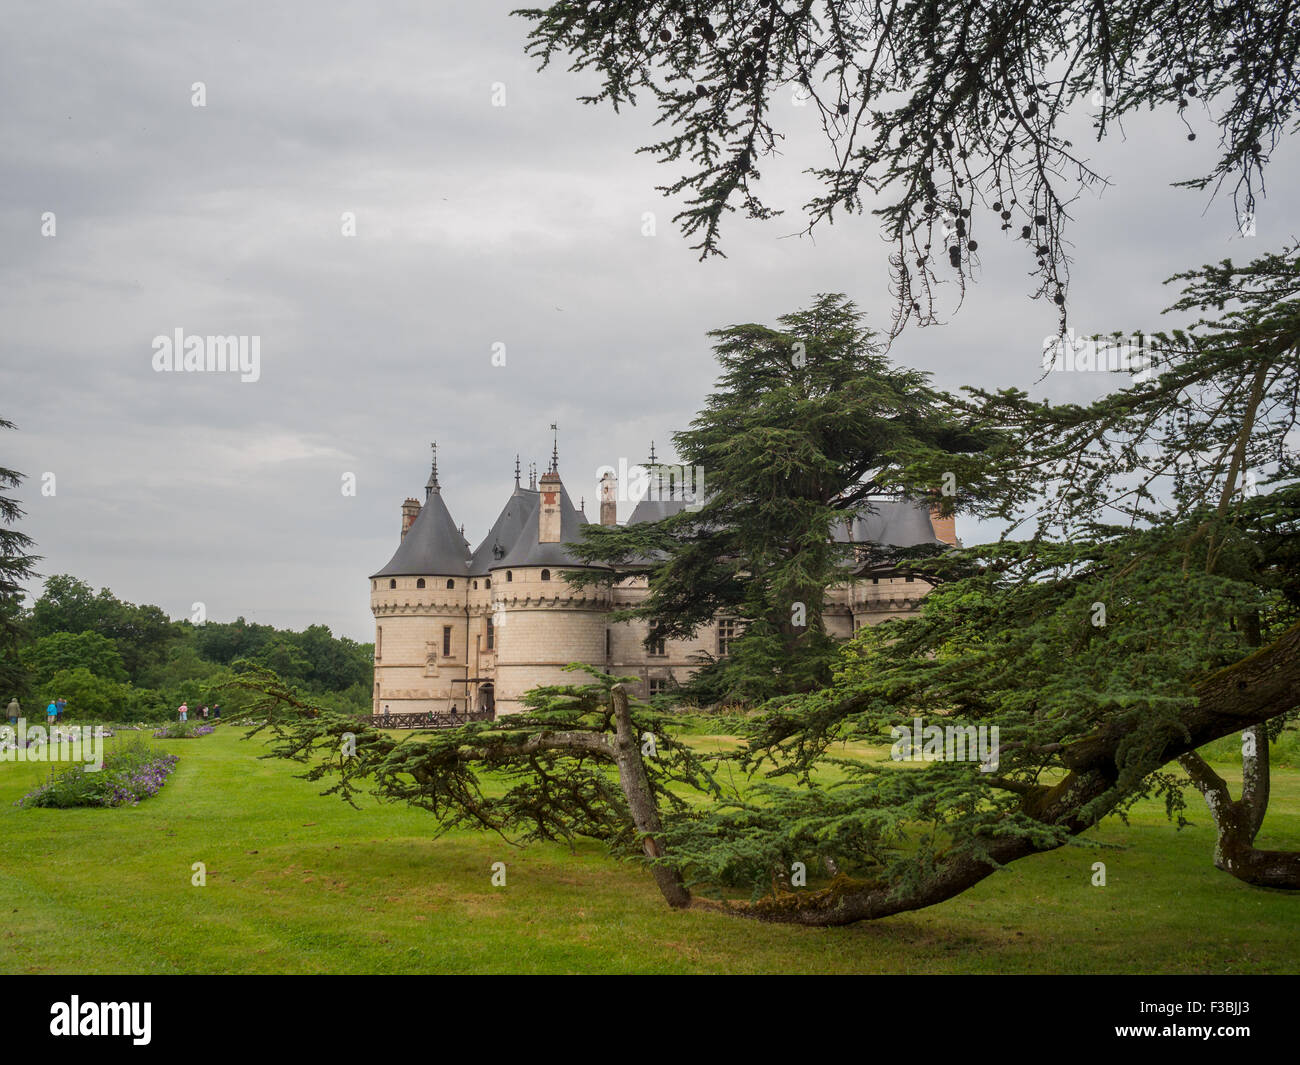 Domain of Chaumont-sur-Loire park and castle Stock Photo